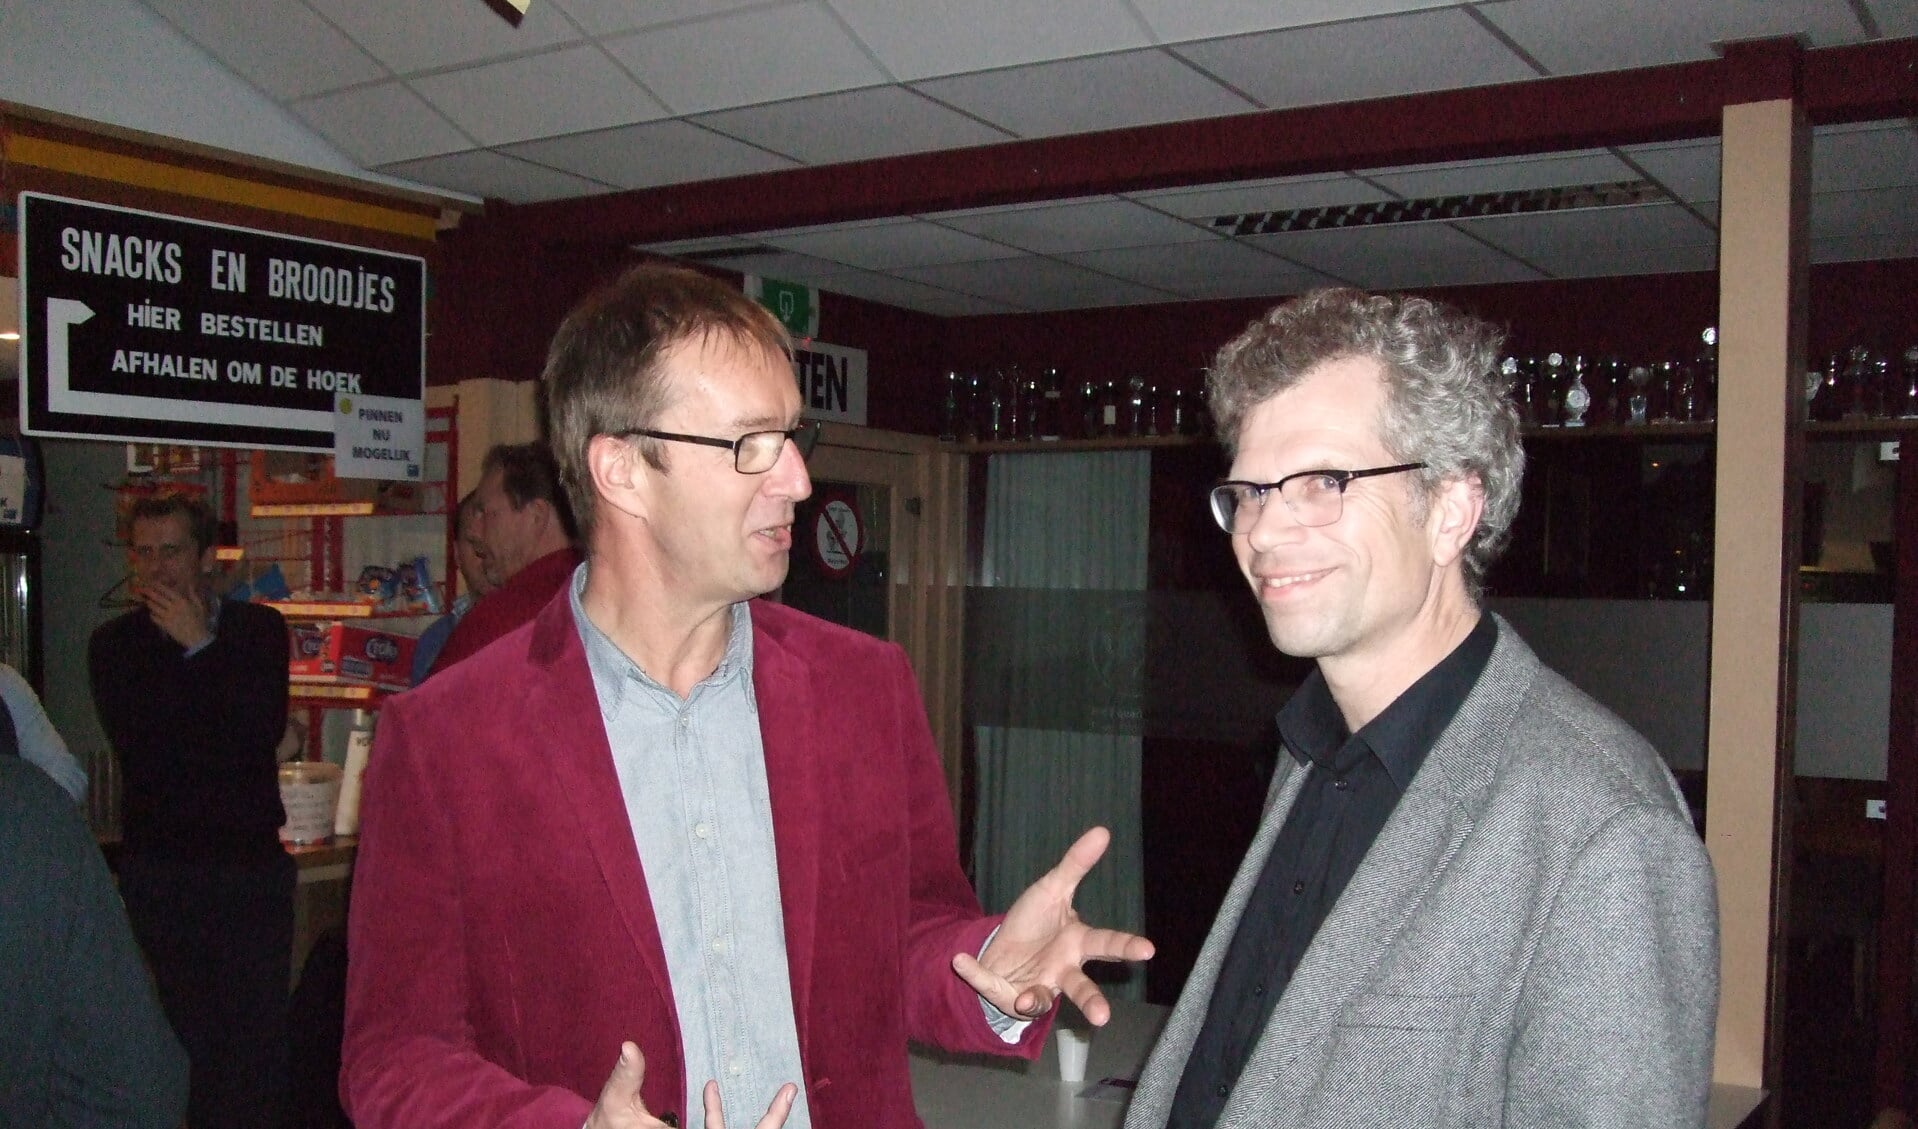 Links dagvoorzitter Jan Pieter Stam (BSF) en rechts directeur Adriaan van Engelen van Stimular; de werkplaats voor Duurzaam Ondernemen.